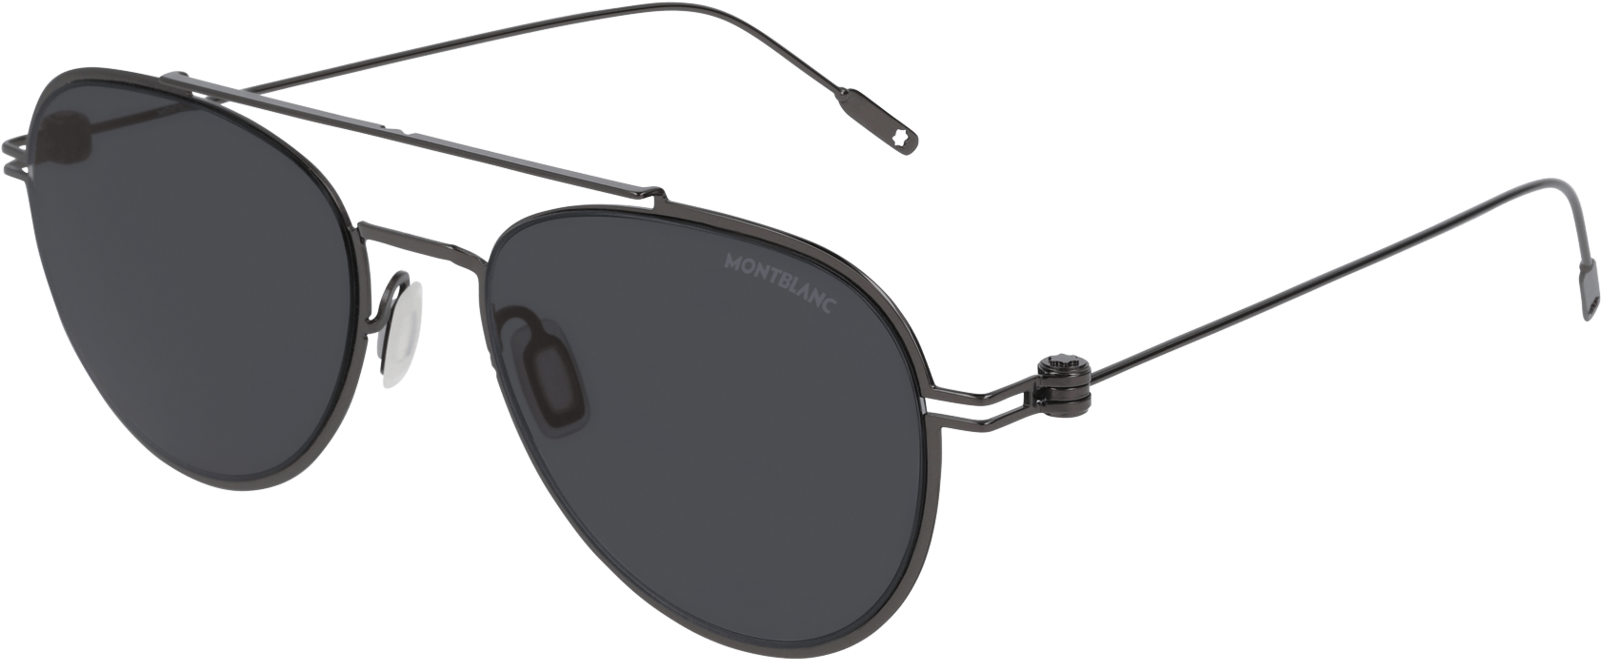 255087 Ecom Retina 01 - Sunglasses Clipart (1600x1600), Png Download